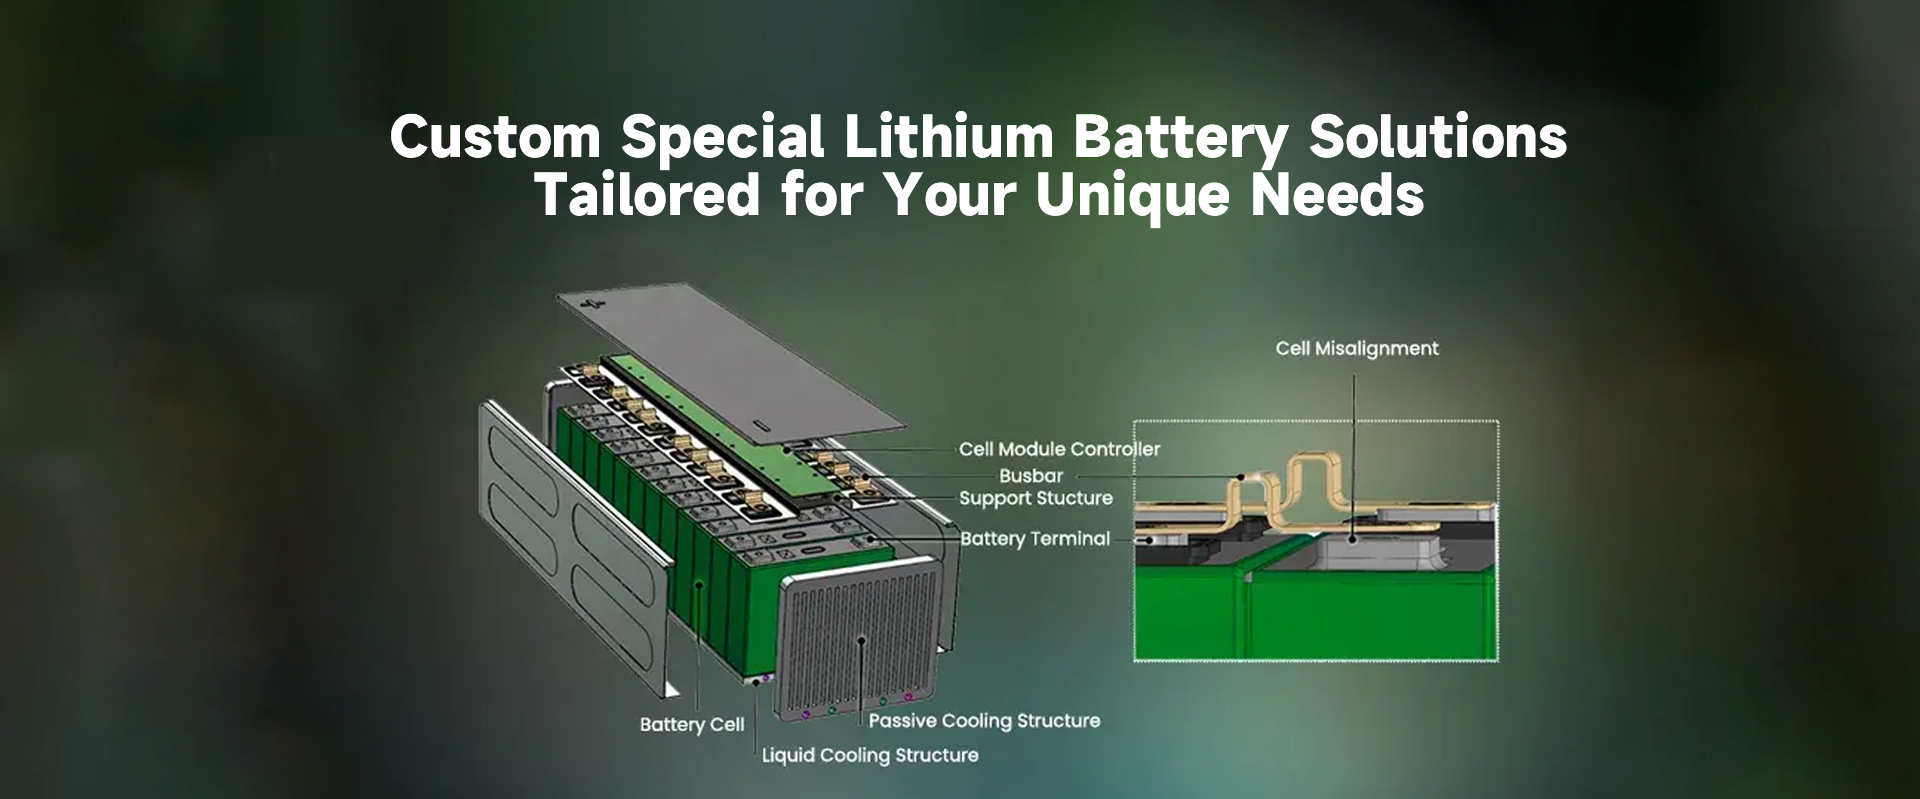 Soluzioni speciali personalizzate per batterie al litio